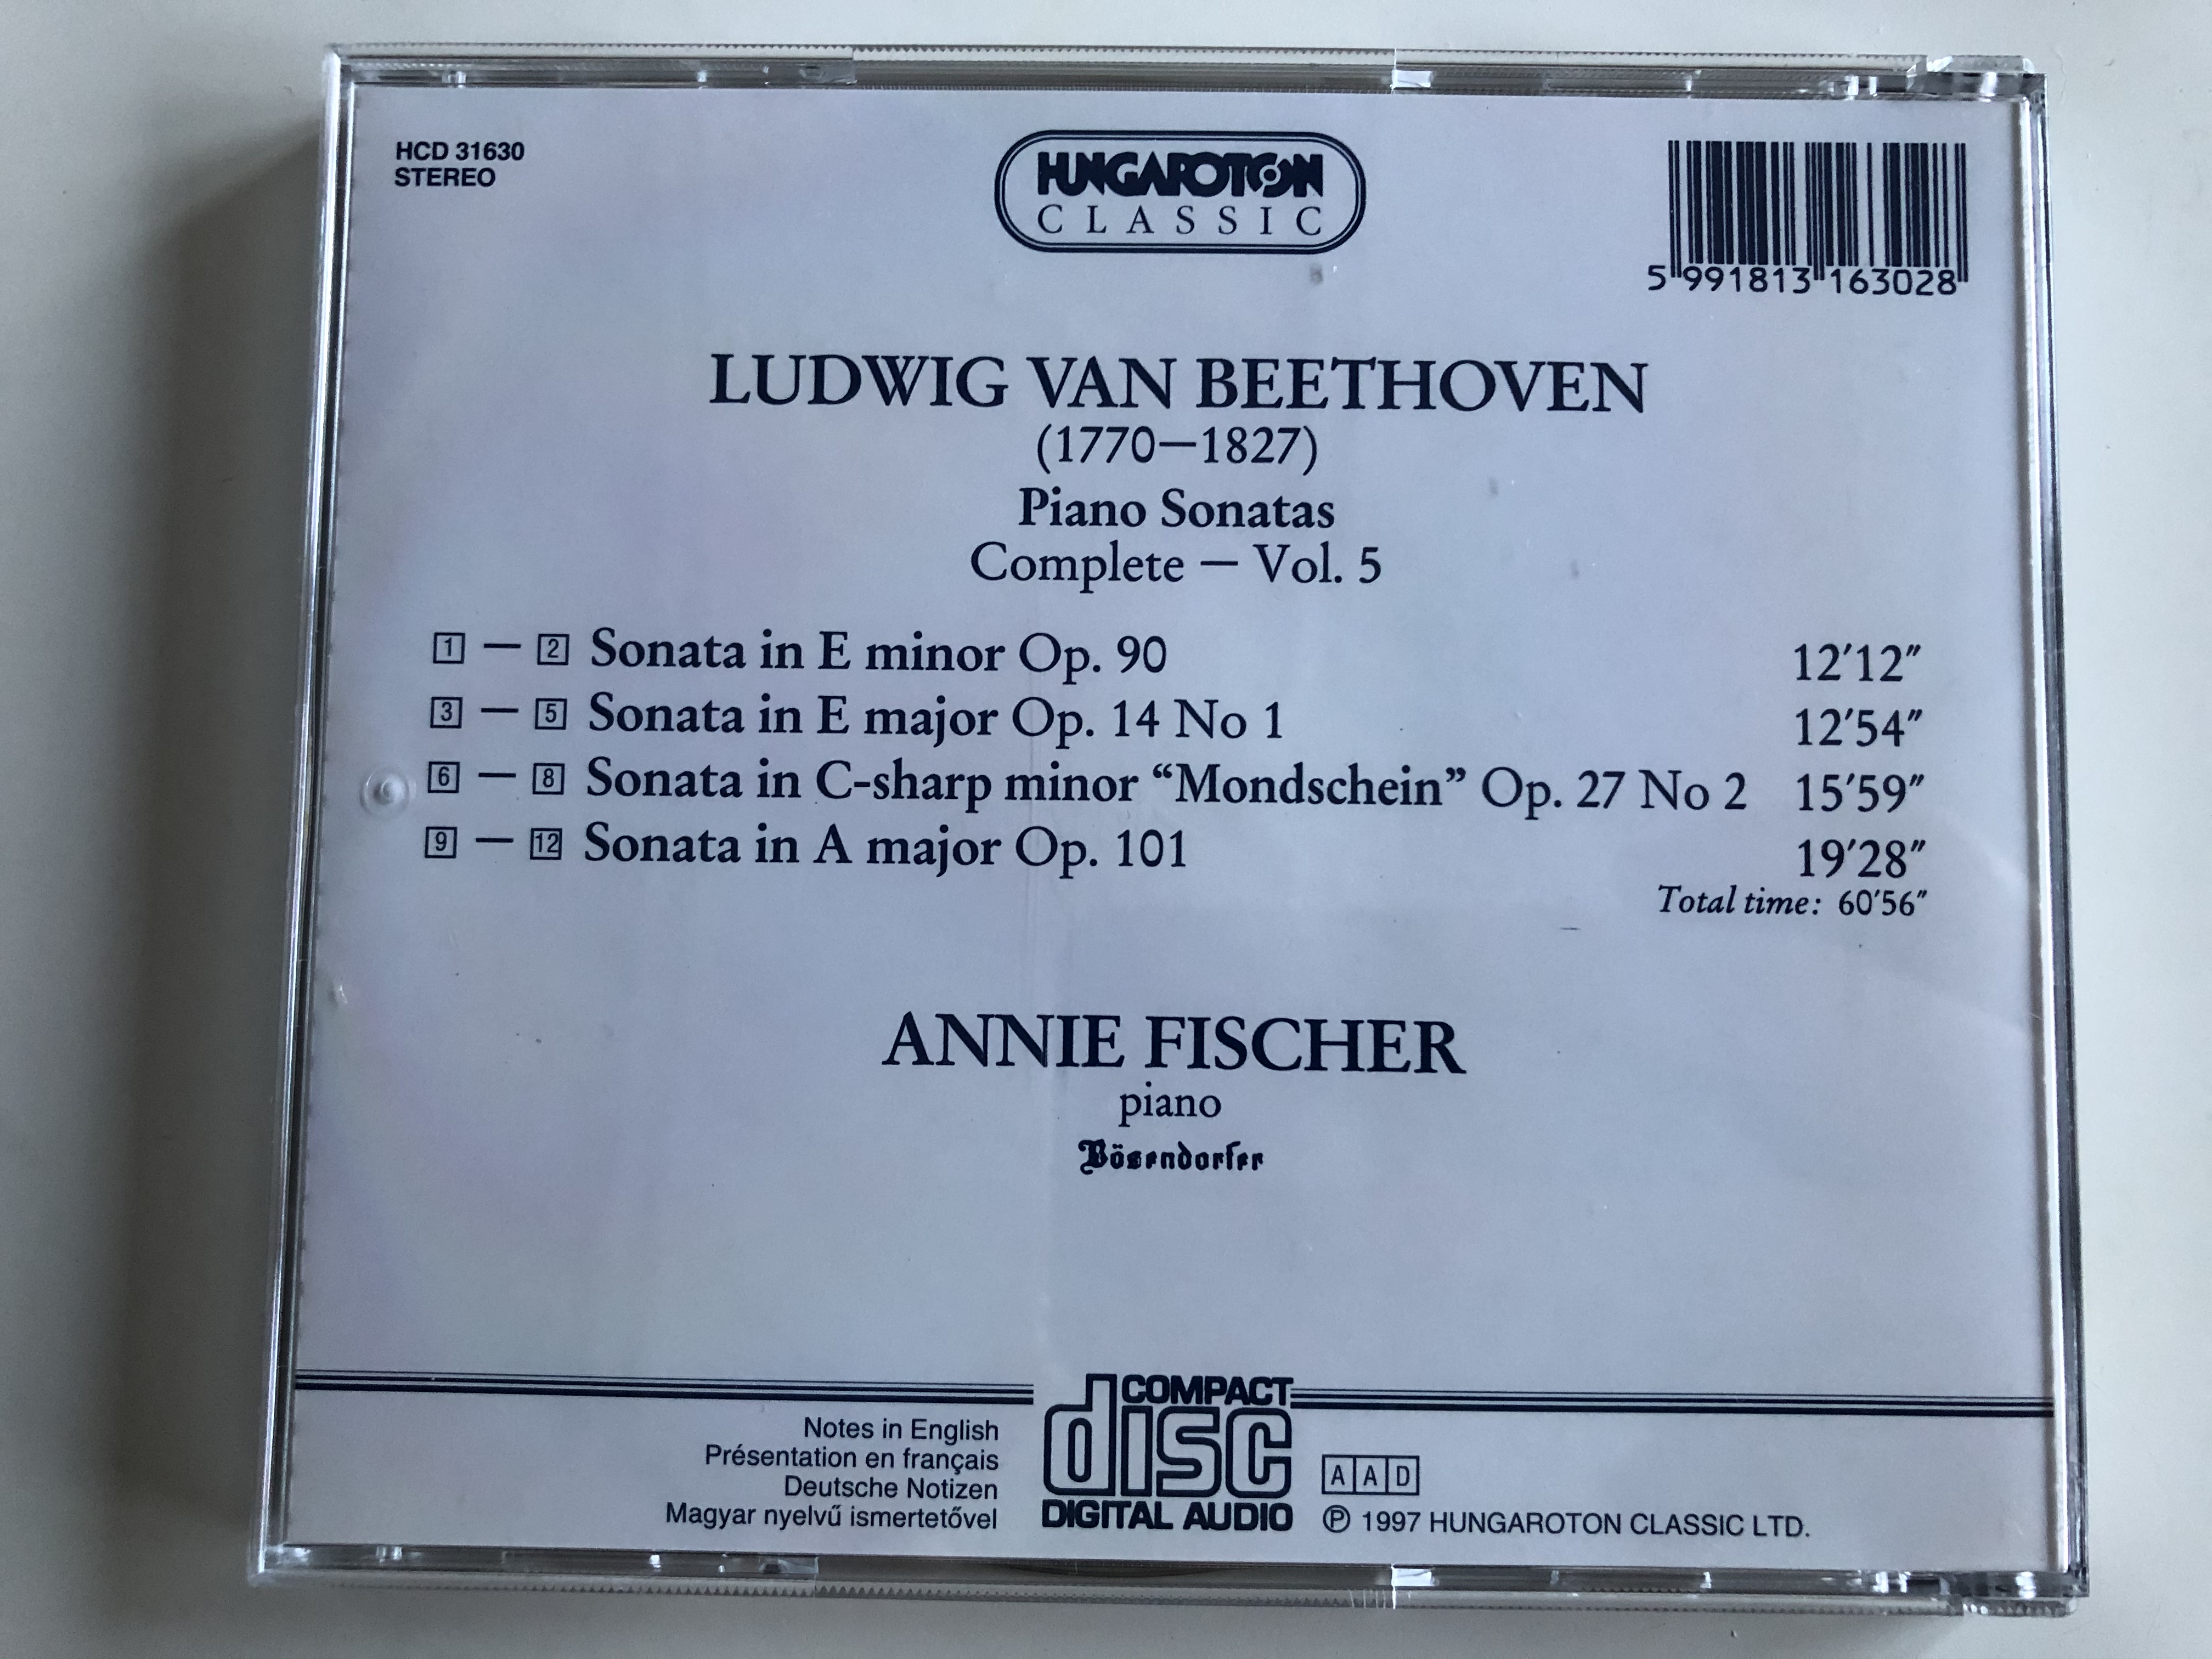 annie-fischer-ludwig-van-beethoven-piano-sonatas-complete-vol.-5-e-minor-op.-90-e-major-op.-141-c-sharp-minor-op.-272-mondschein-a-major-op.101-hungaroton-classic-audio-cd-1997-stereo-10-.jpg